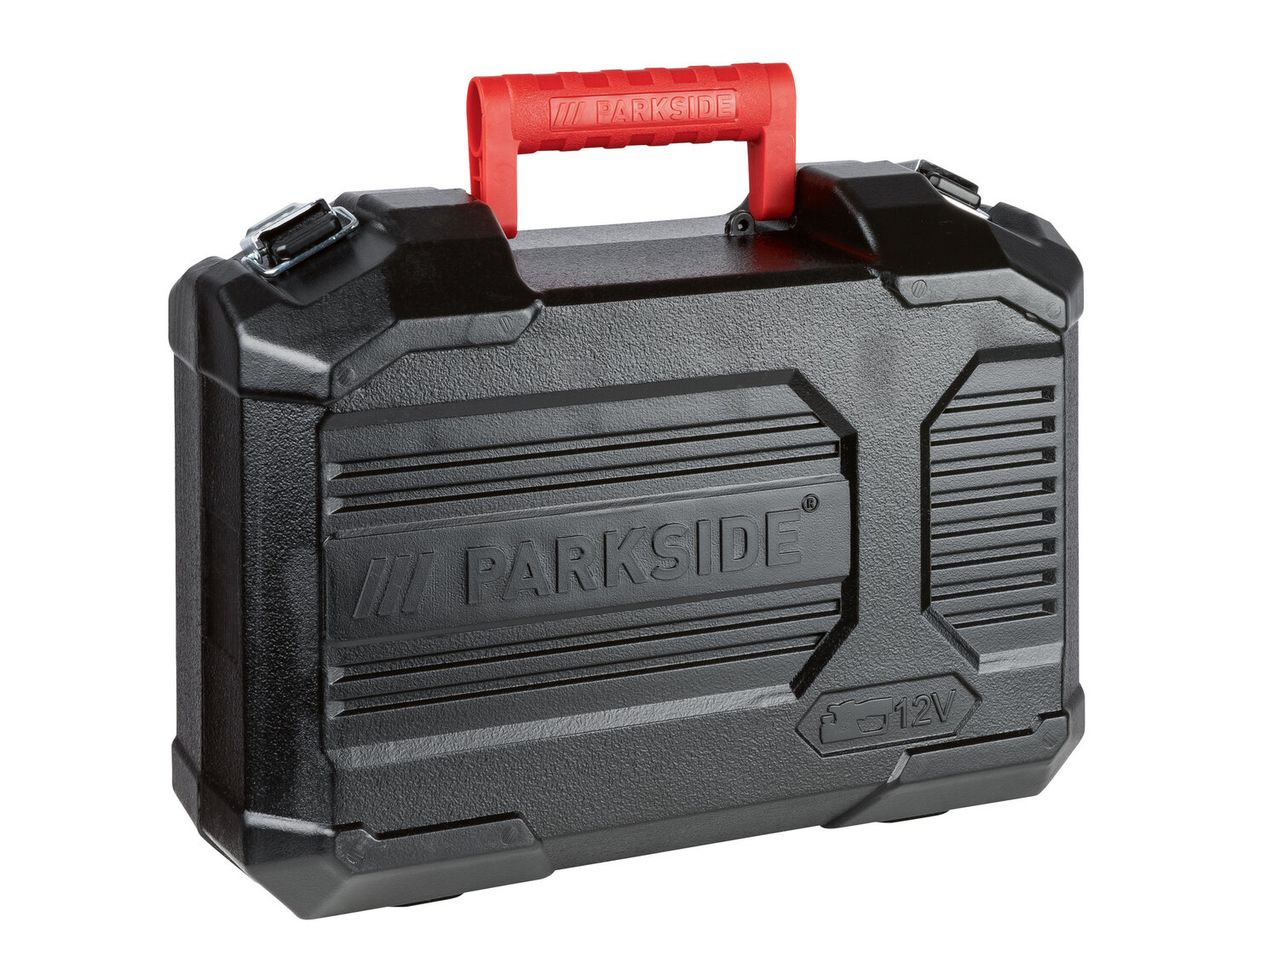 Ver empliada: Parkside® Plaina 12 V sem Bateria - Imagem 5